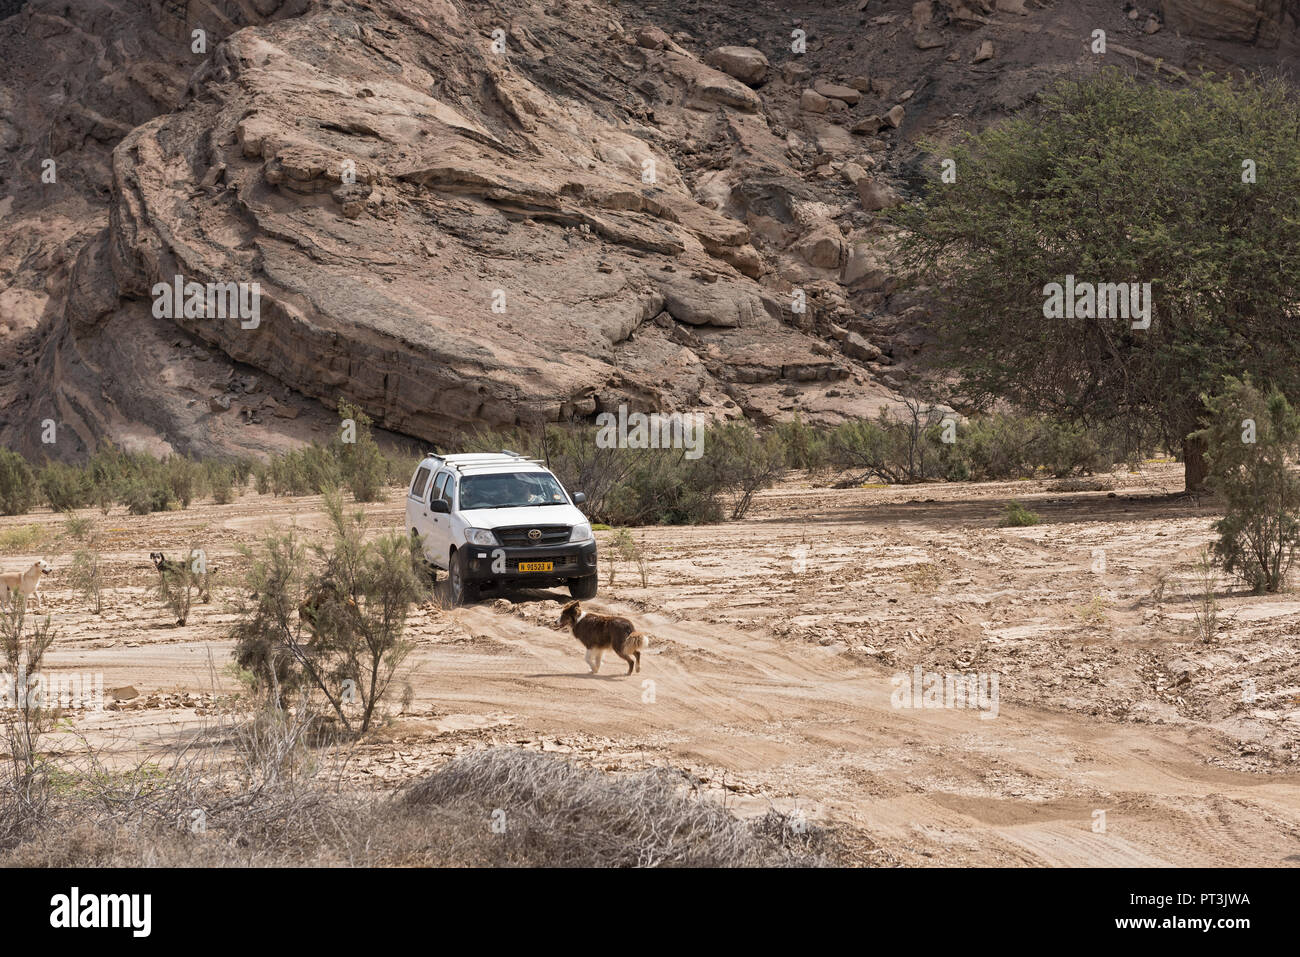 Auto auf einem Sandweg im trockenen Flussbett des Swakop River östlich von Swakopmund, Namibia. Stockfoto